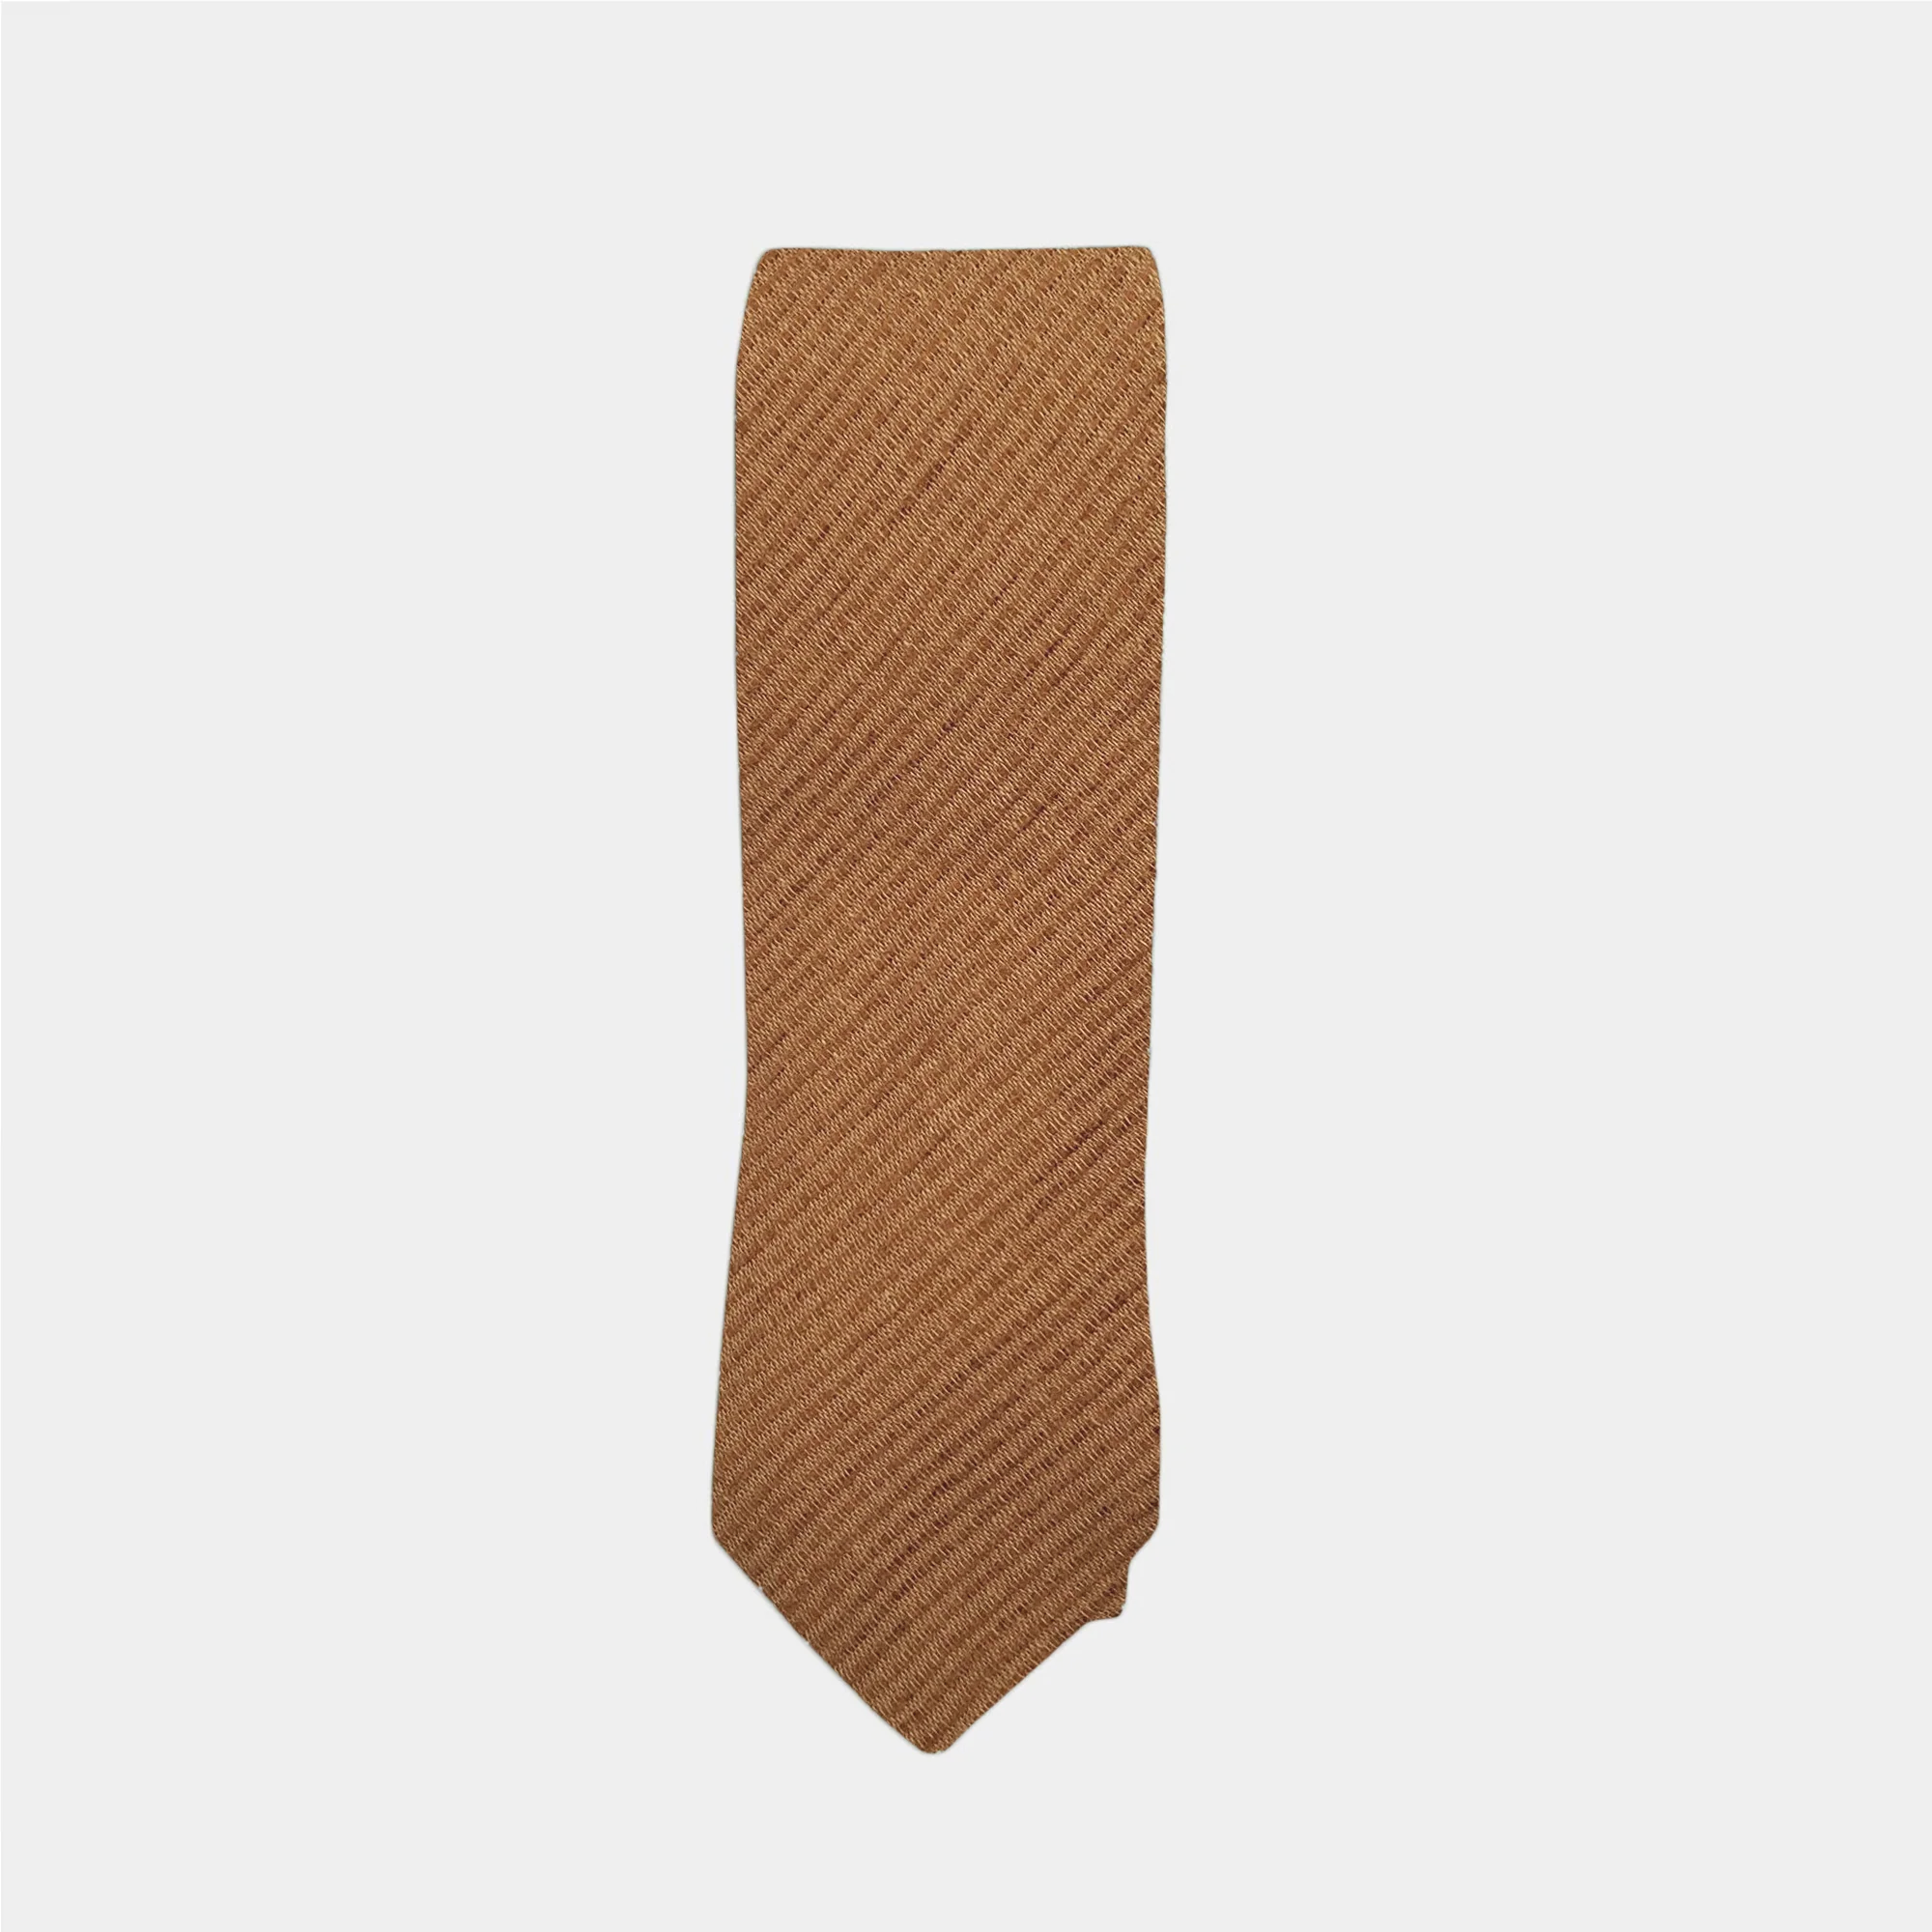 COLIN - Men's Tie